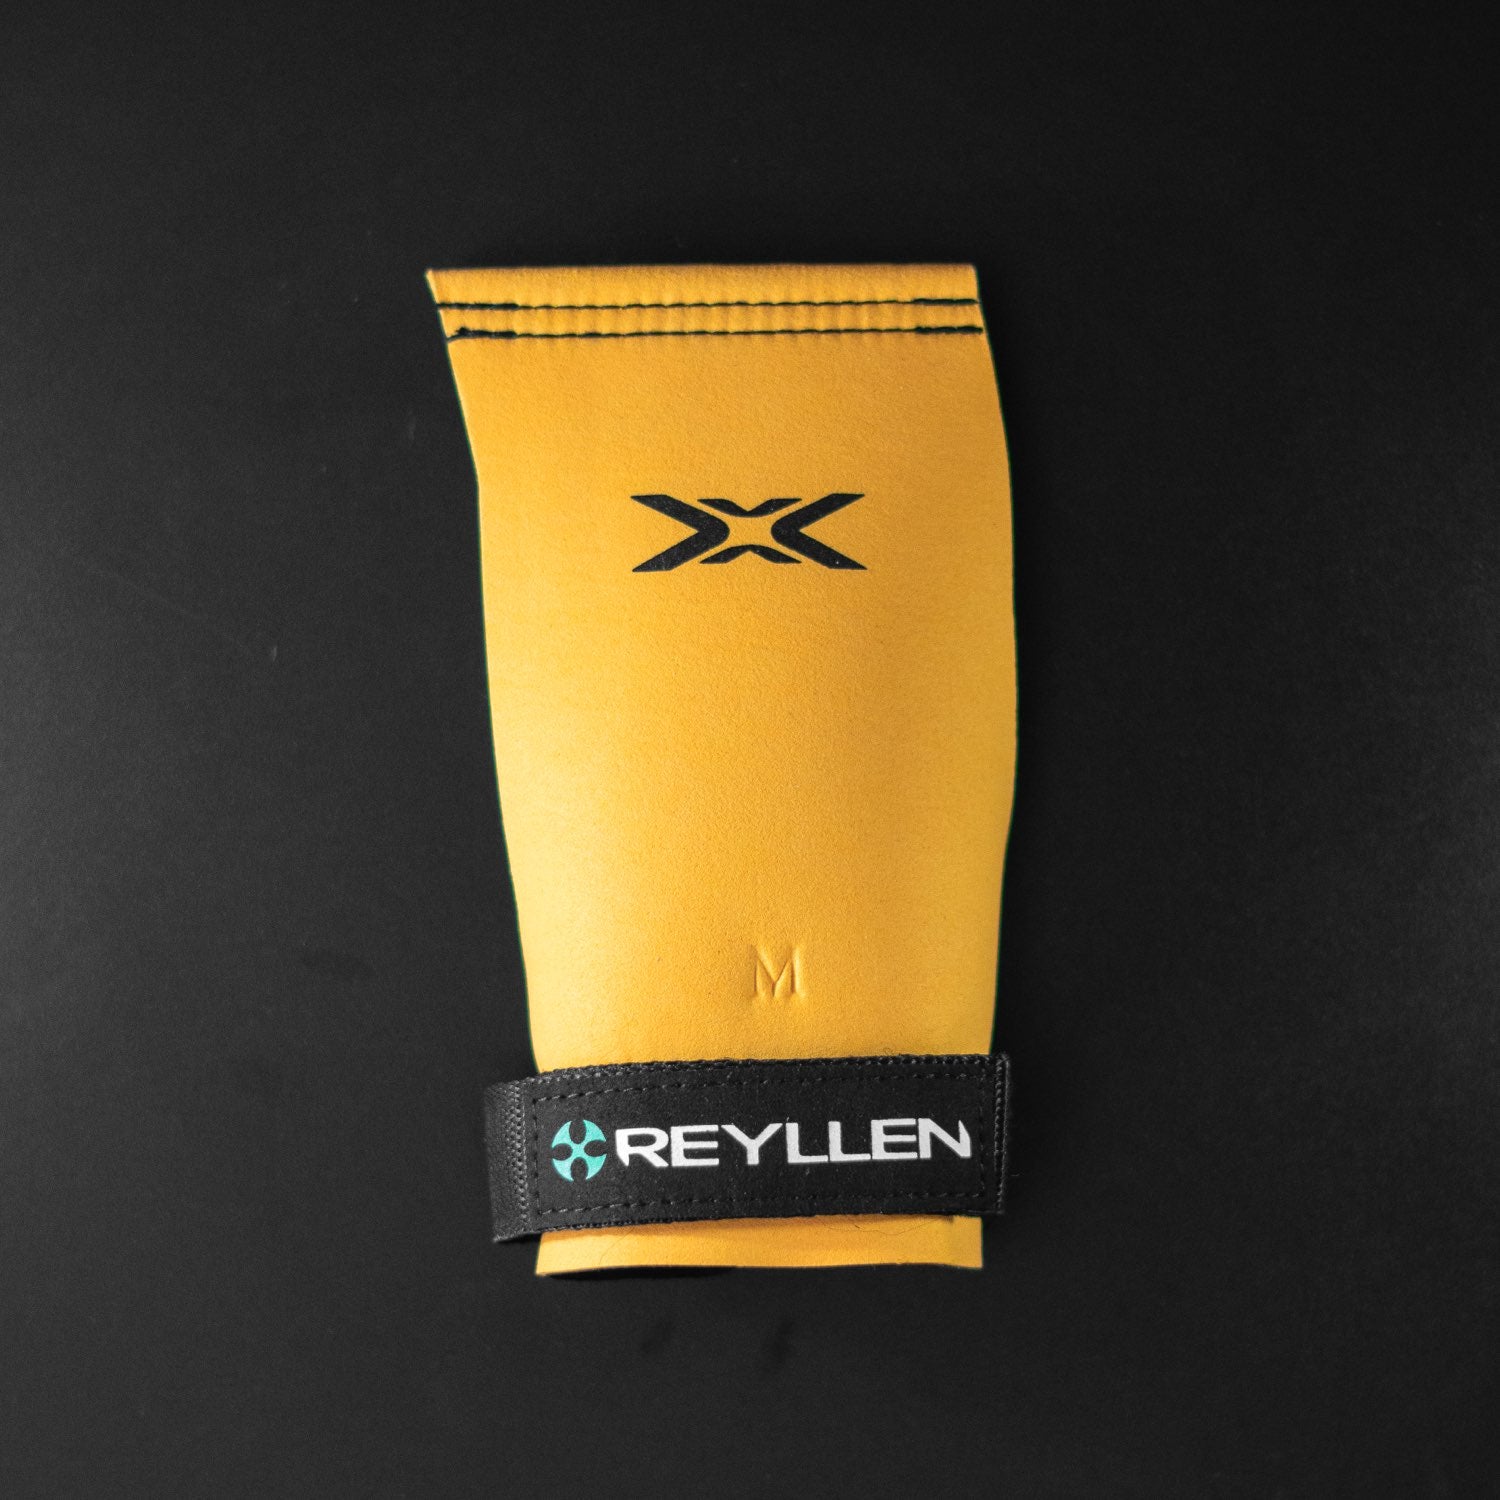 Reyllen X2 BumbleBee Crossfit Gymnastic Hand Grips - Fingerless  top down view single